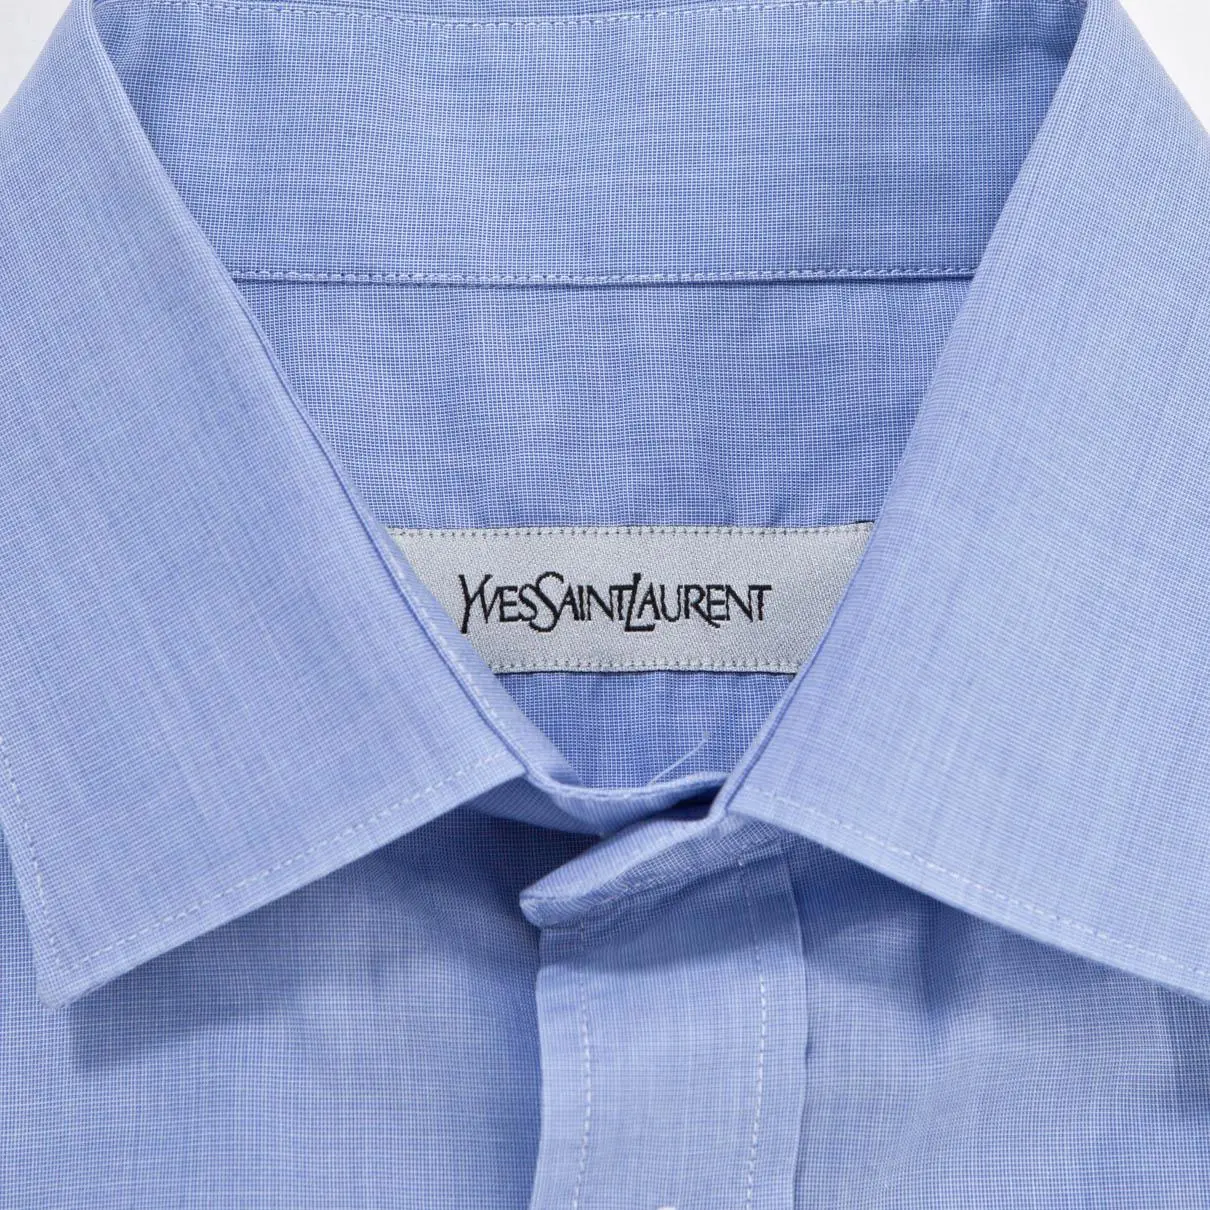 Buy Yves Saint Laurent Blue Cotton Shirt online